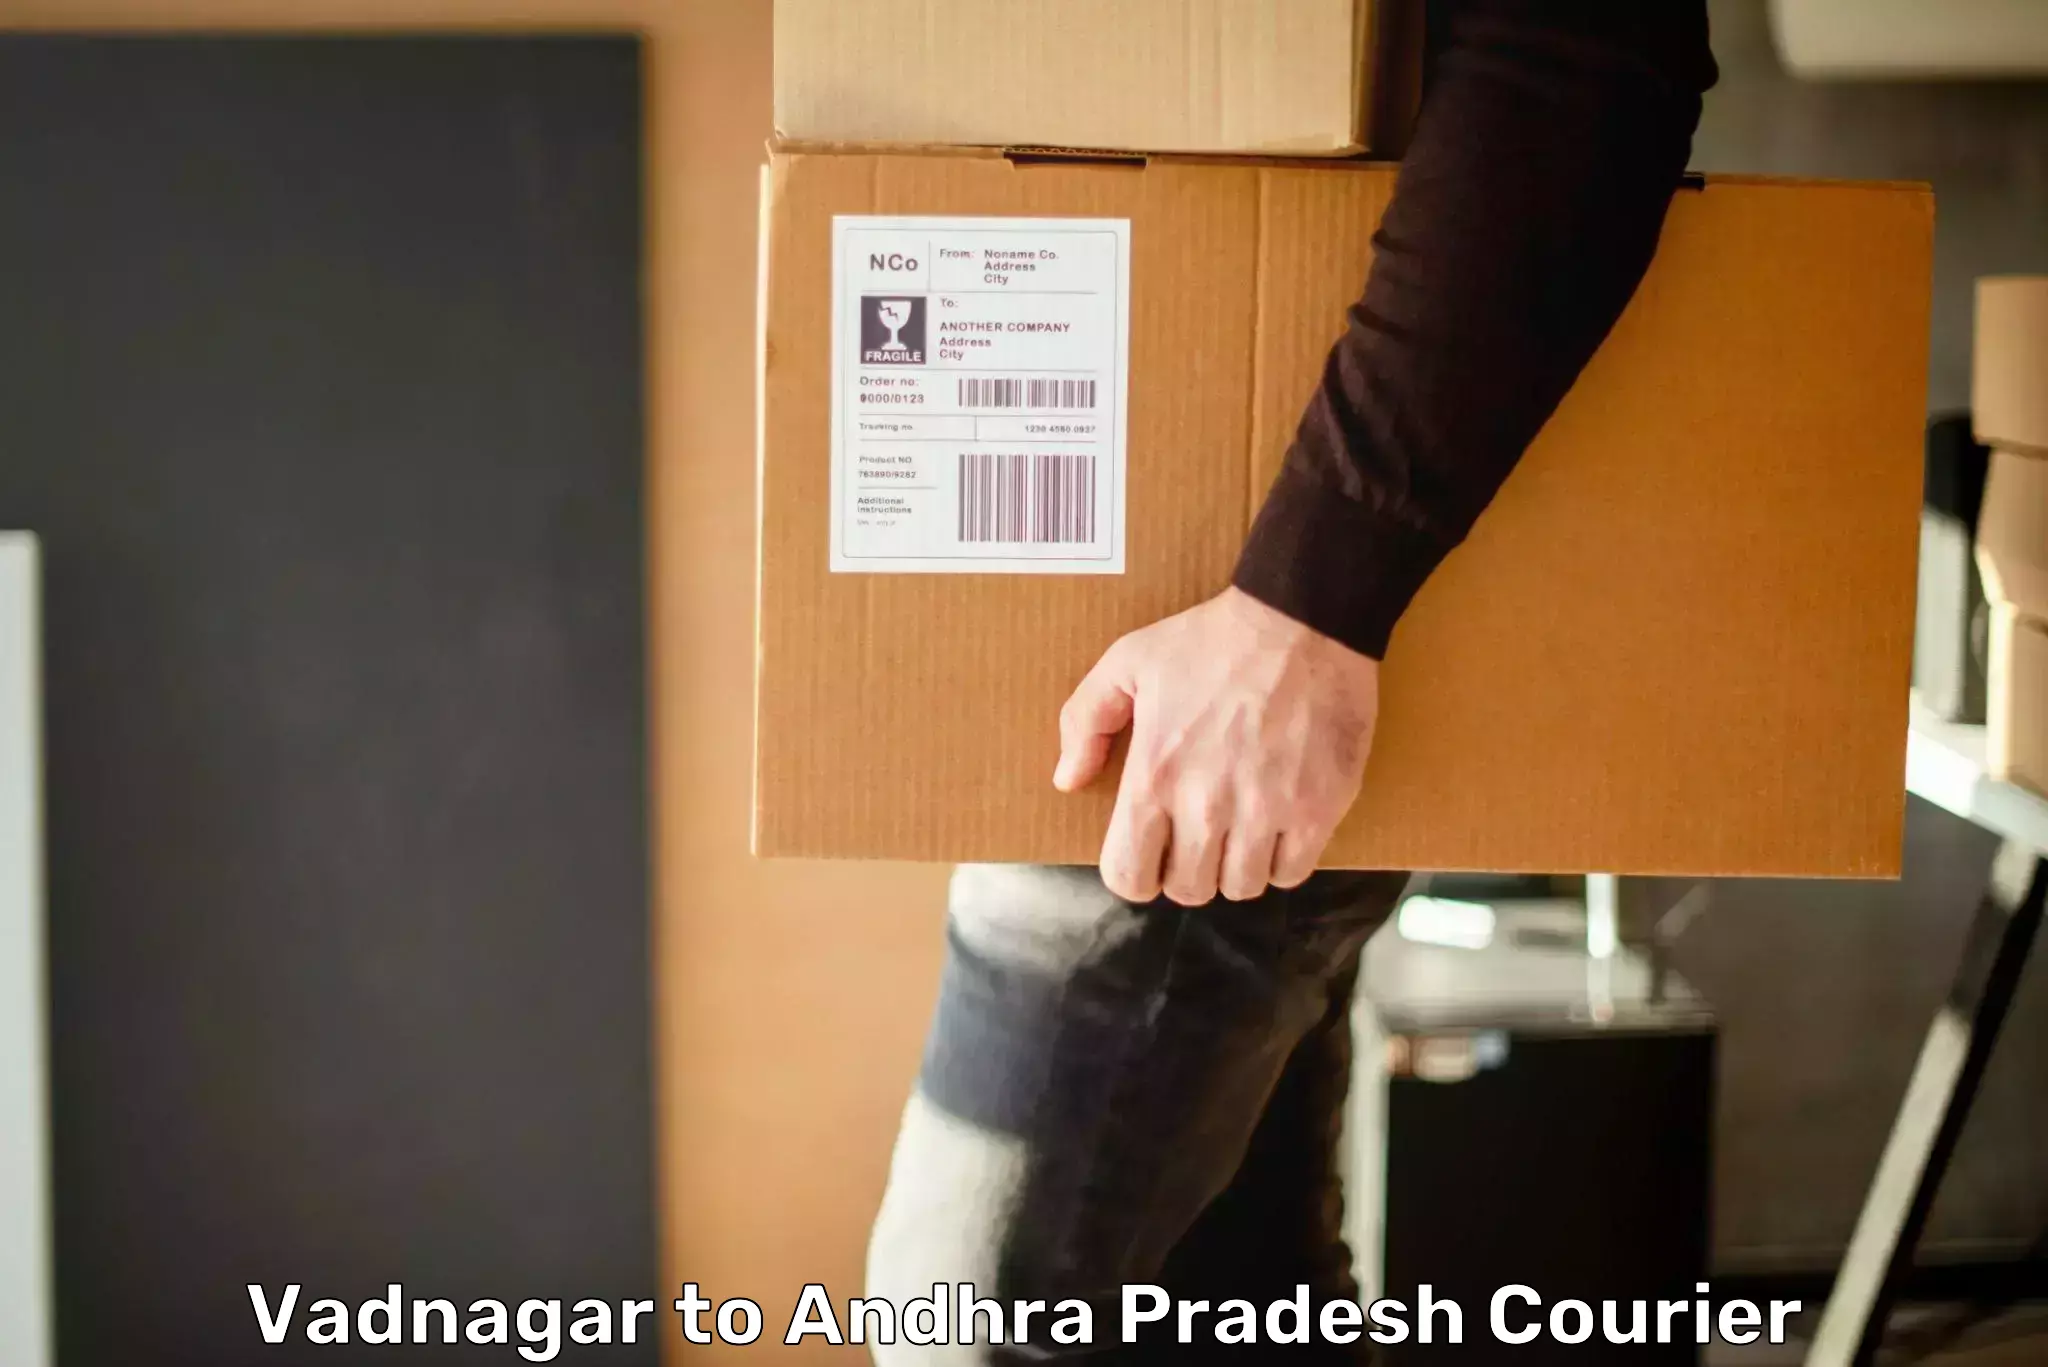 Specialized shipment handling Vadnagar to Bikkavolu